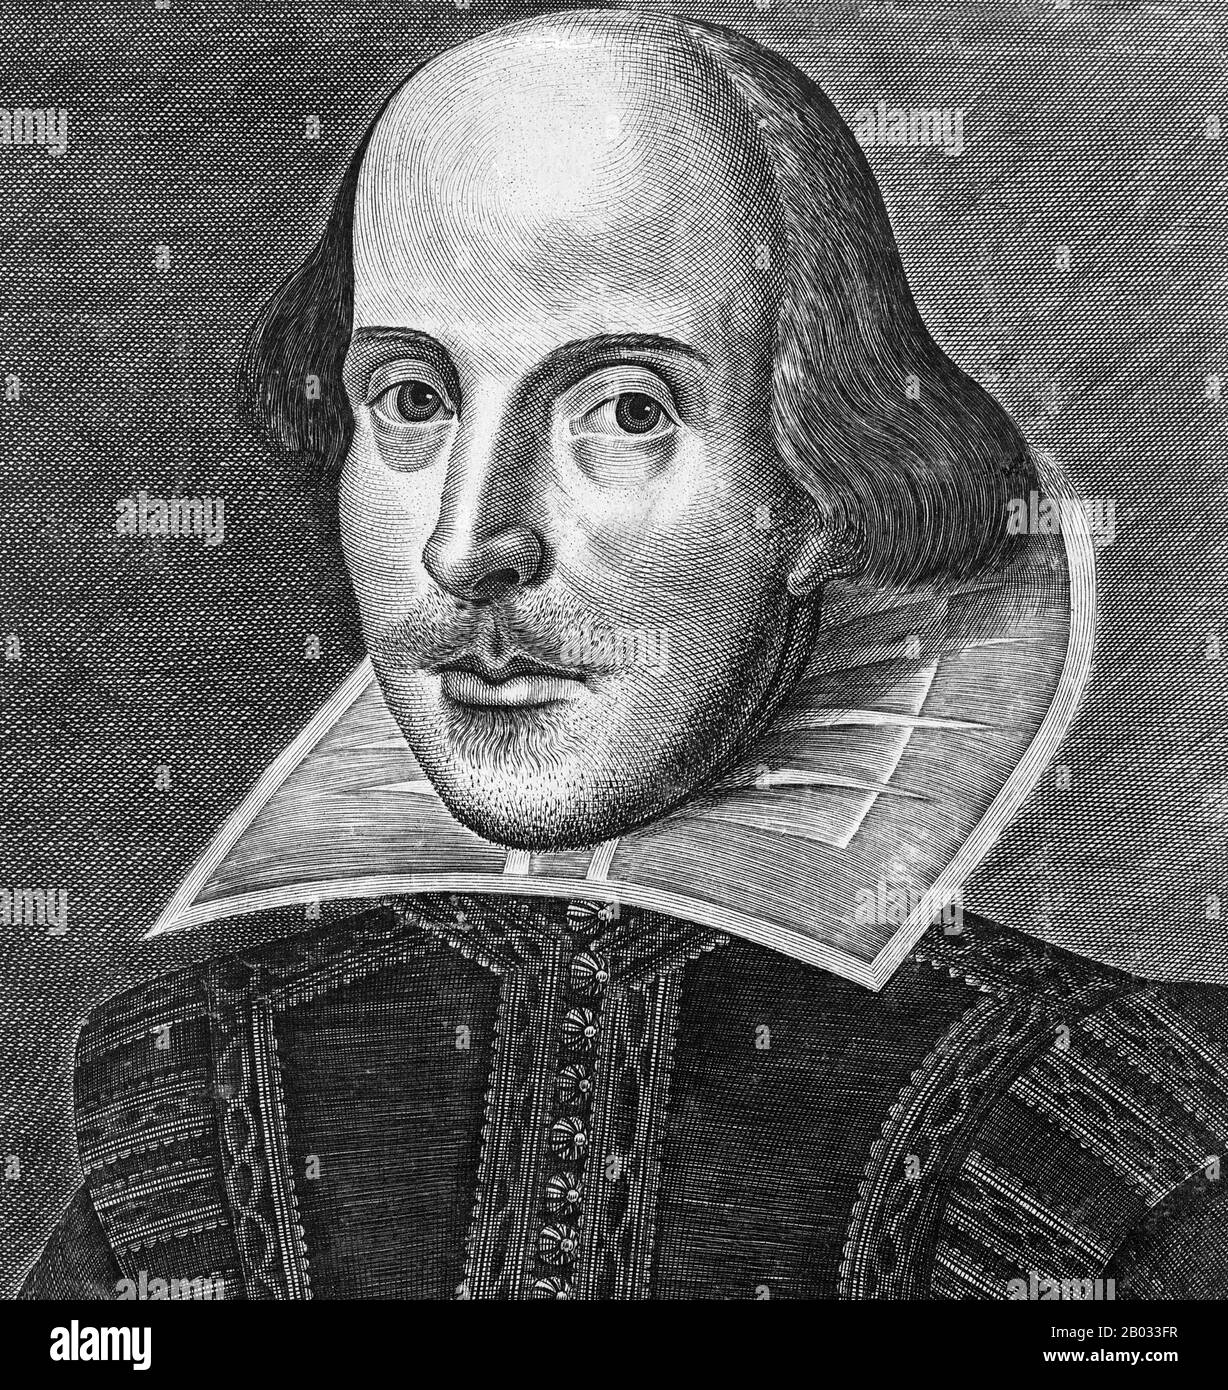 William Shakespeare (26. April 1564 - 23. April 1616) war ein englischer Dichter, Dramatiker und Schauspieler, der weithin als der größte Schriftsteller in der englischen Sprache und der vornehmste Dramatiker der Welt gilt. Seine extanten Werke, darunter Kollaborationen, bestehen aus etwa 38 Theaterstücken, 154 Sonetten, zwei langen erzählenden Gedichten und einigen anderen Versen, teilweise aus unsicherer Autorschaft. Seine Stücke wurden in jede große lebende Sprache übersetzt und werden häufiger aufgeführt als die eines anderen Dramatikers. Das Droeshout Porträt oder Droeshout Gravur ist ein von Marti graviertes Porträt von William Shakespeare Stockfoto